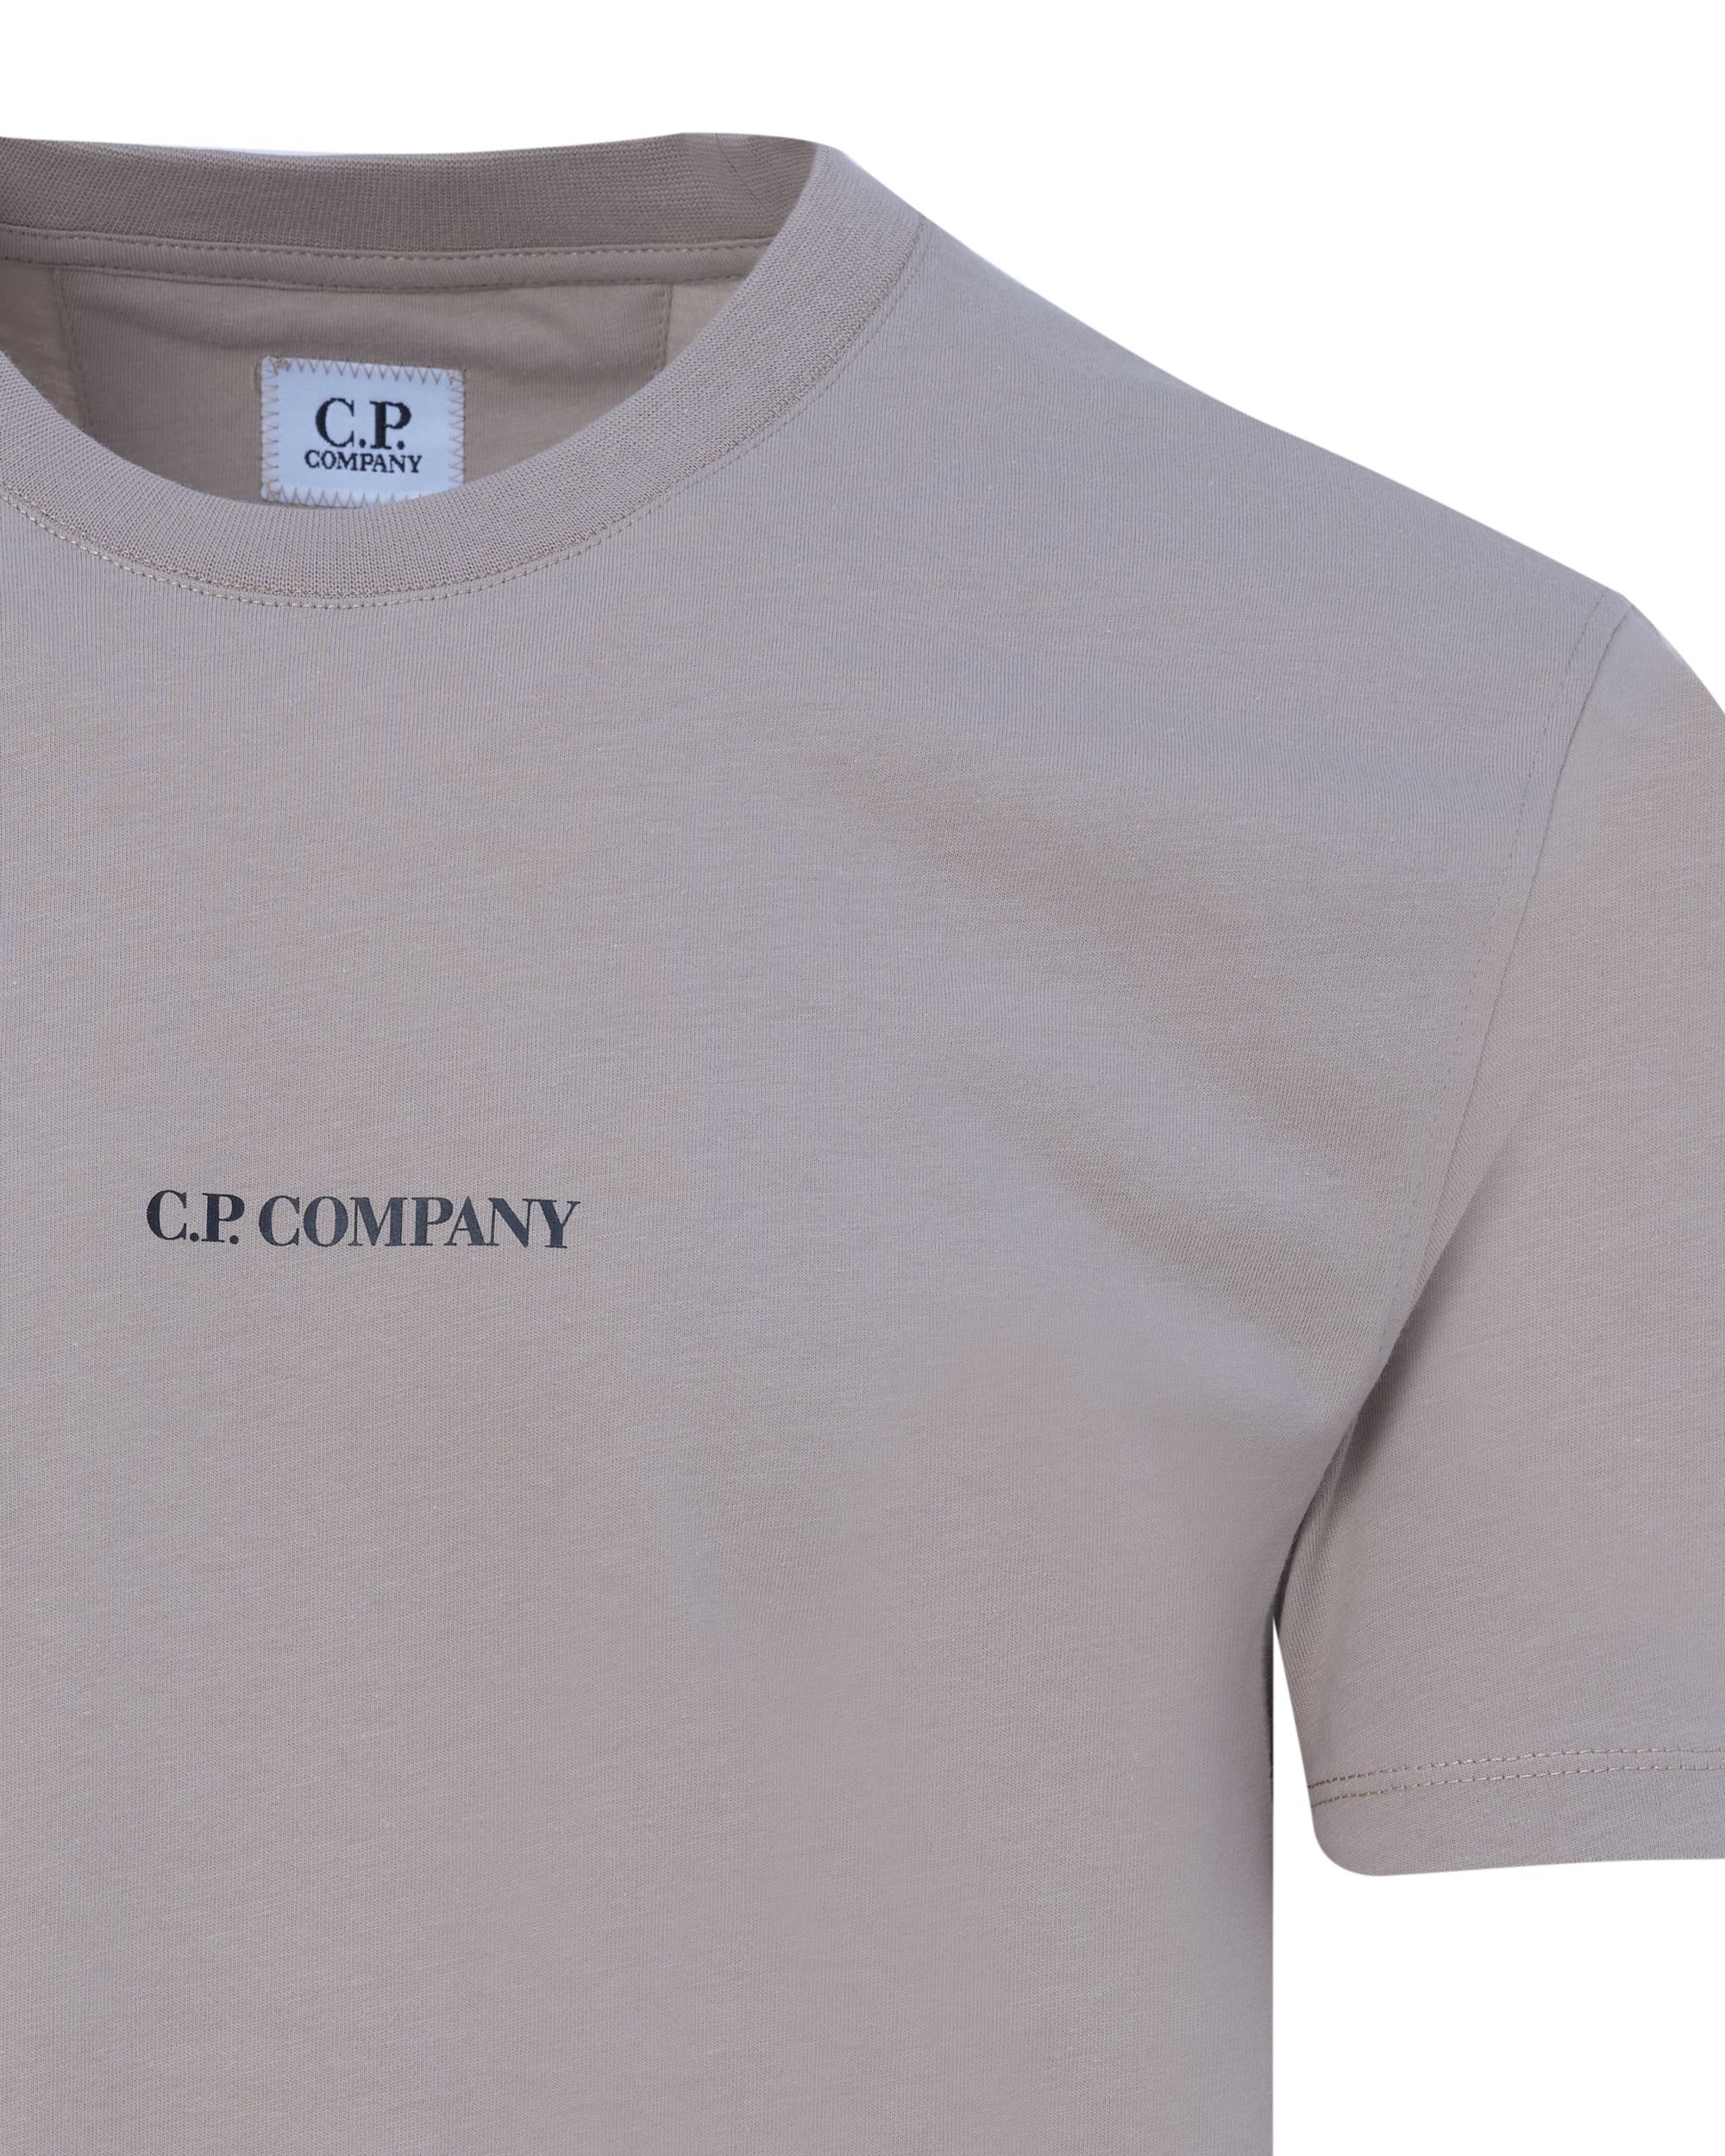 C.P Company T-shirt KM Khaki 082107-001-L